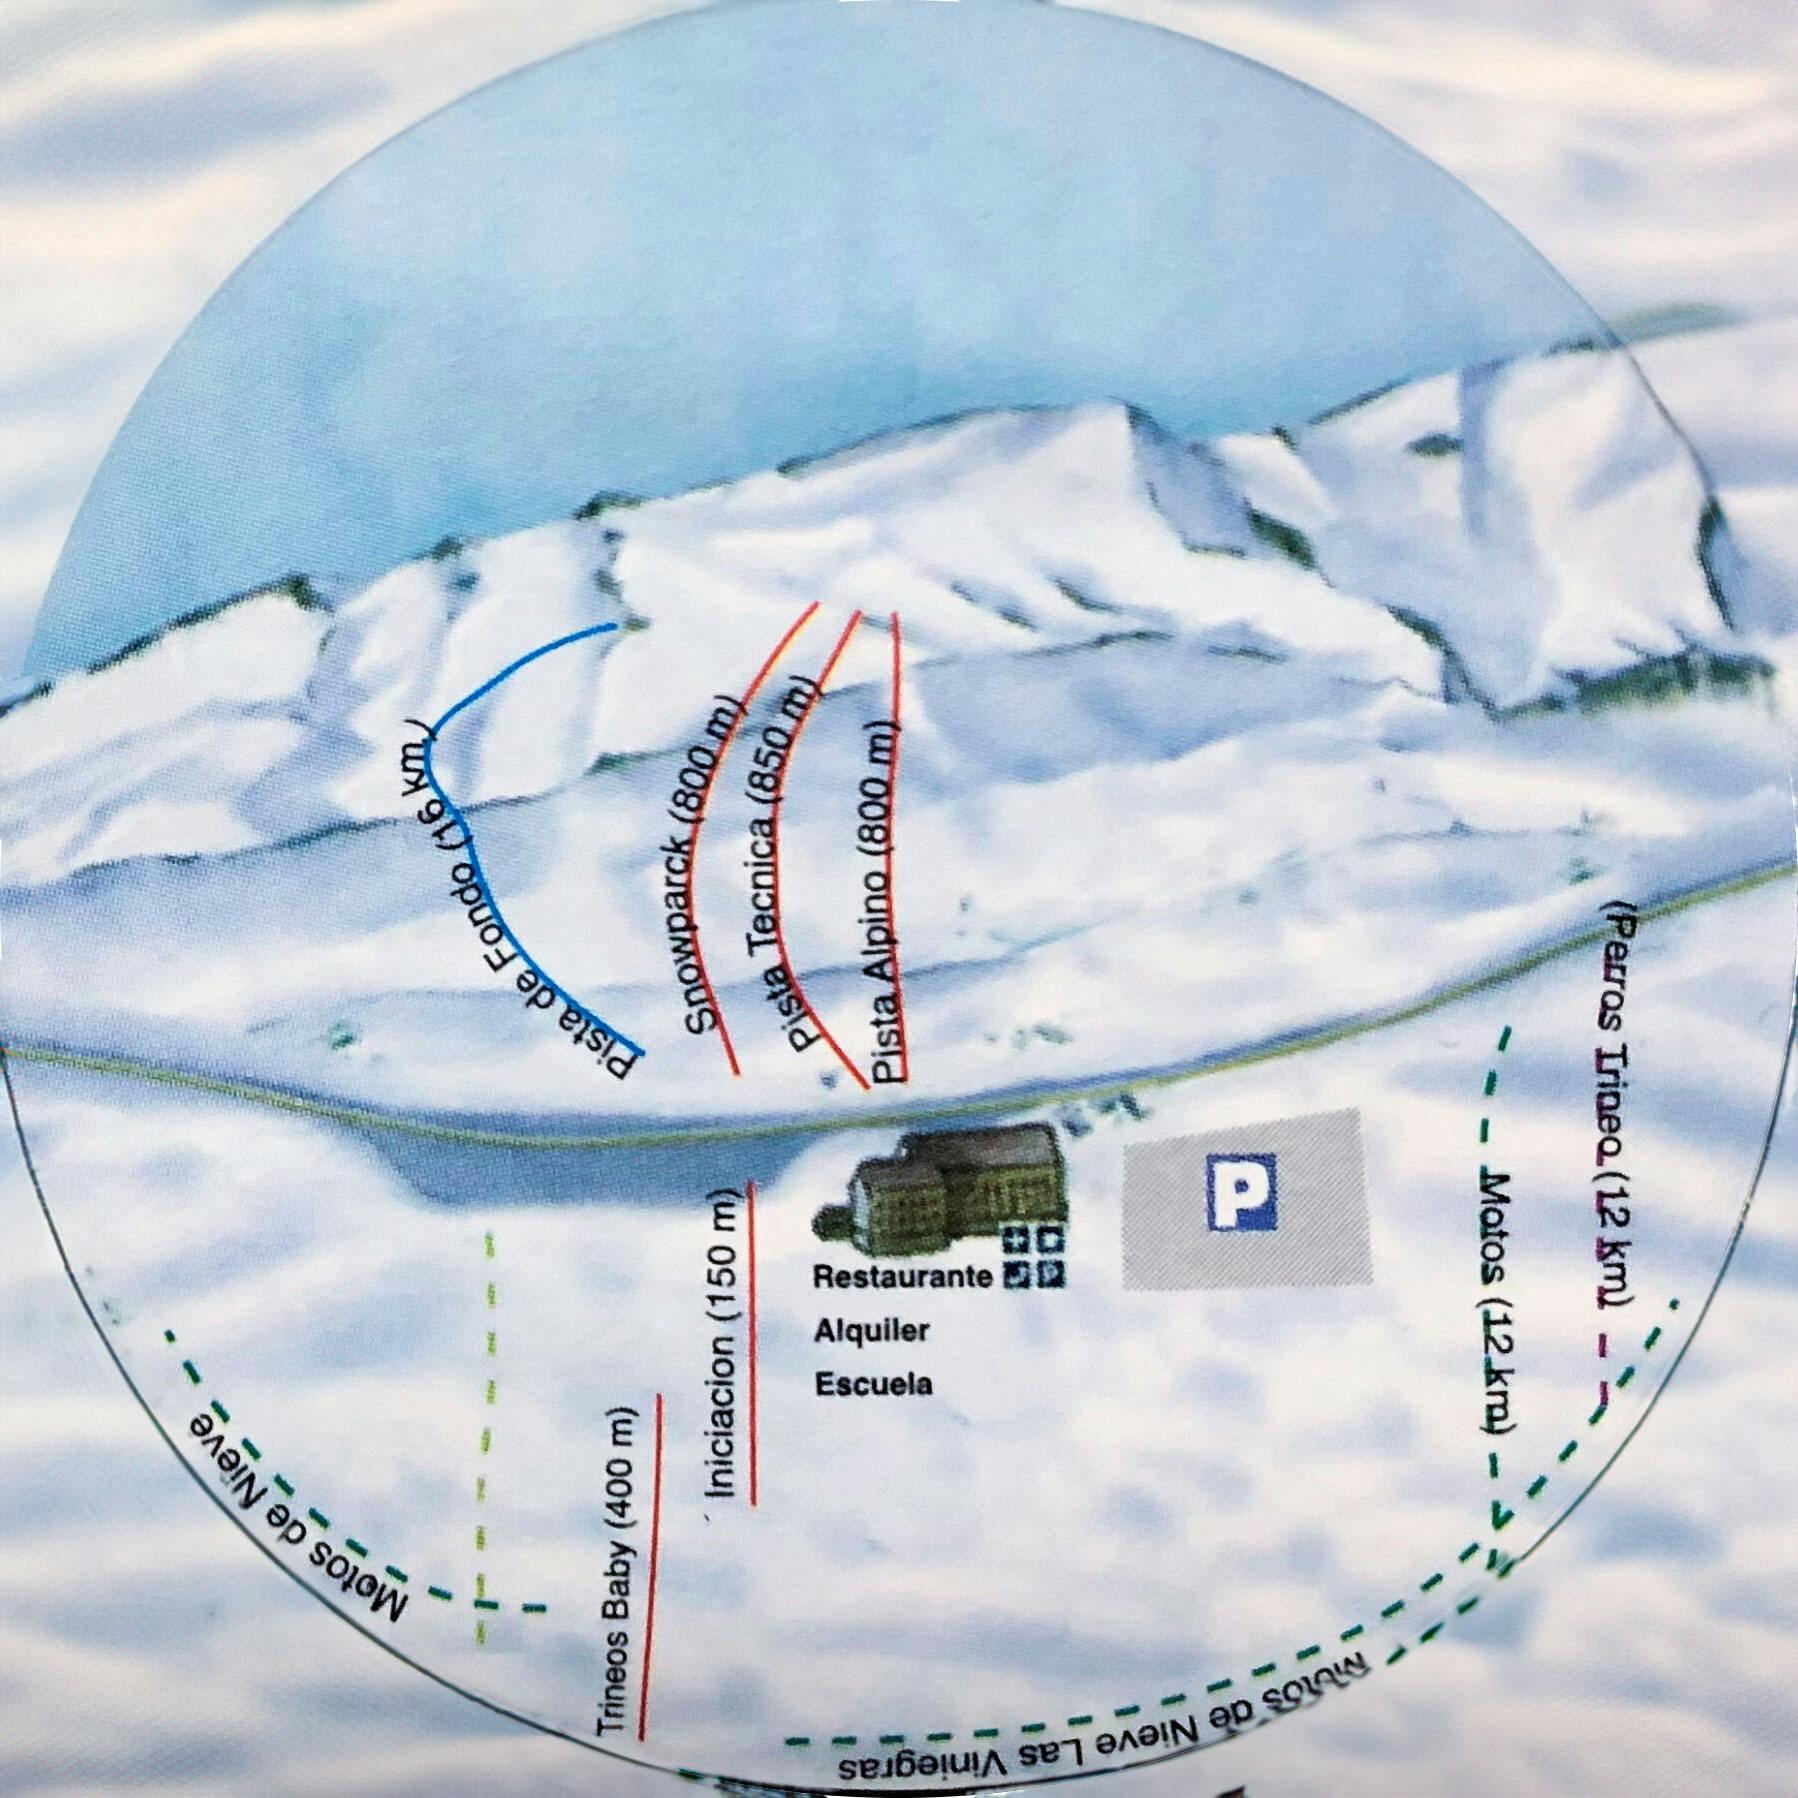 Copitos de Nieve - Estaciones de esquí, ski, snowboard - Mapa de la estación Punto de Nieve Santa Inés